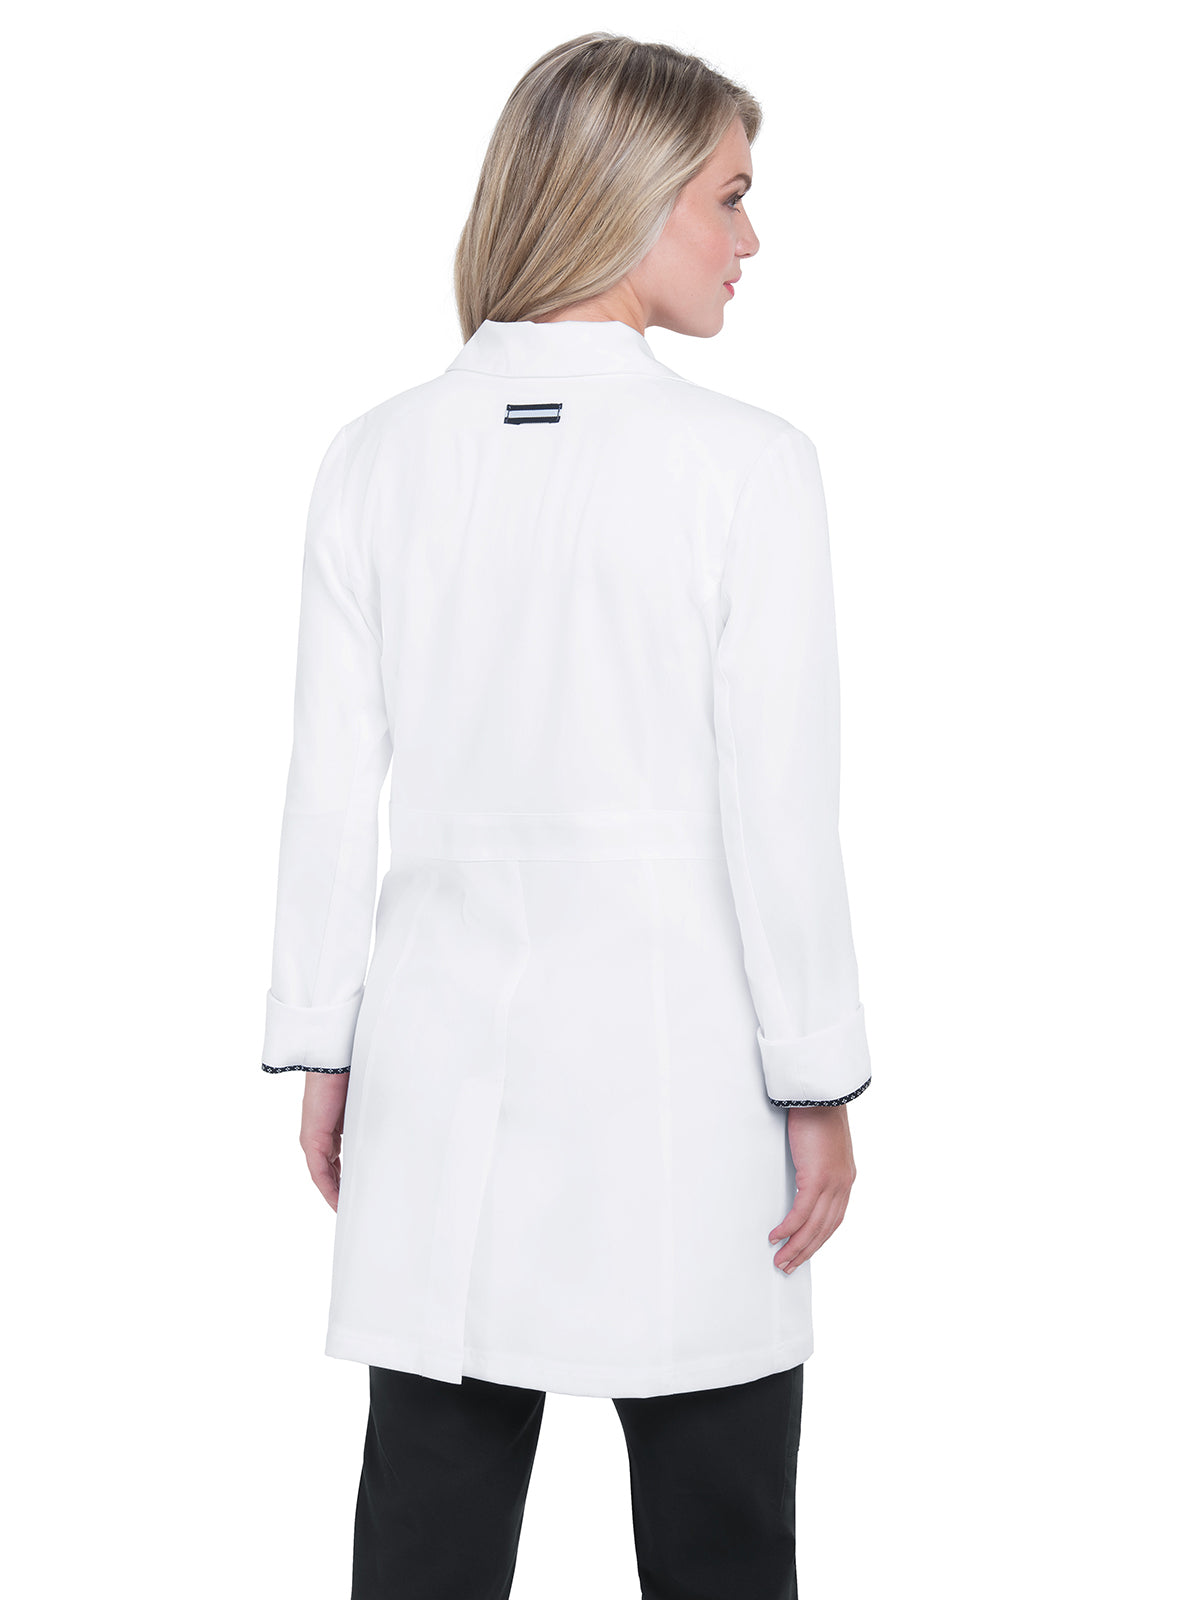 Women's Four-Pocket 35" Stretch Lab Coat